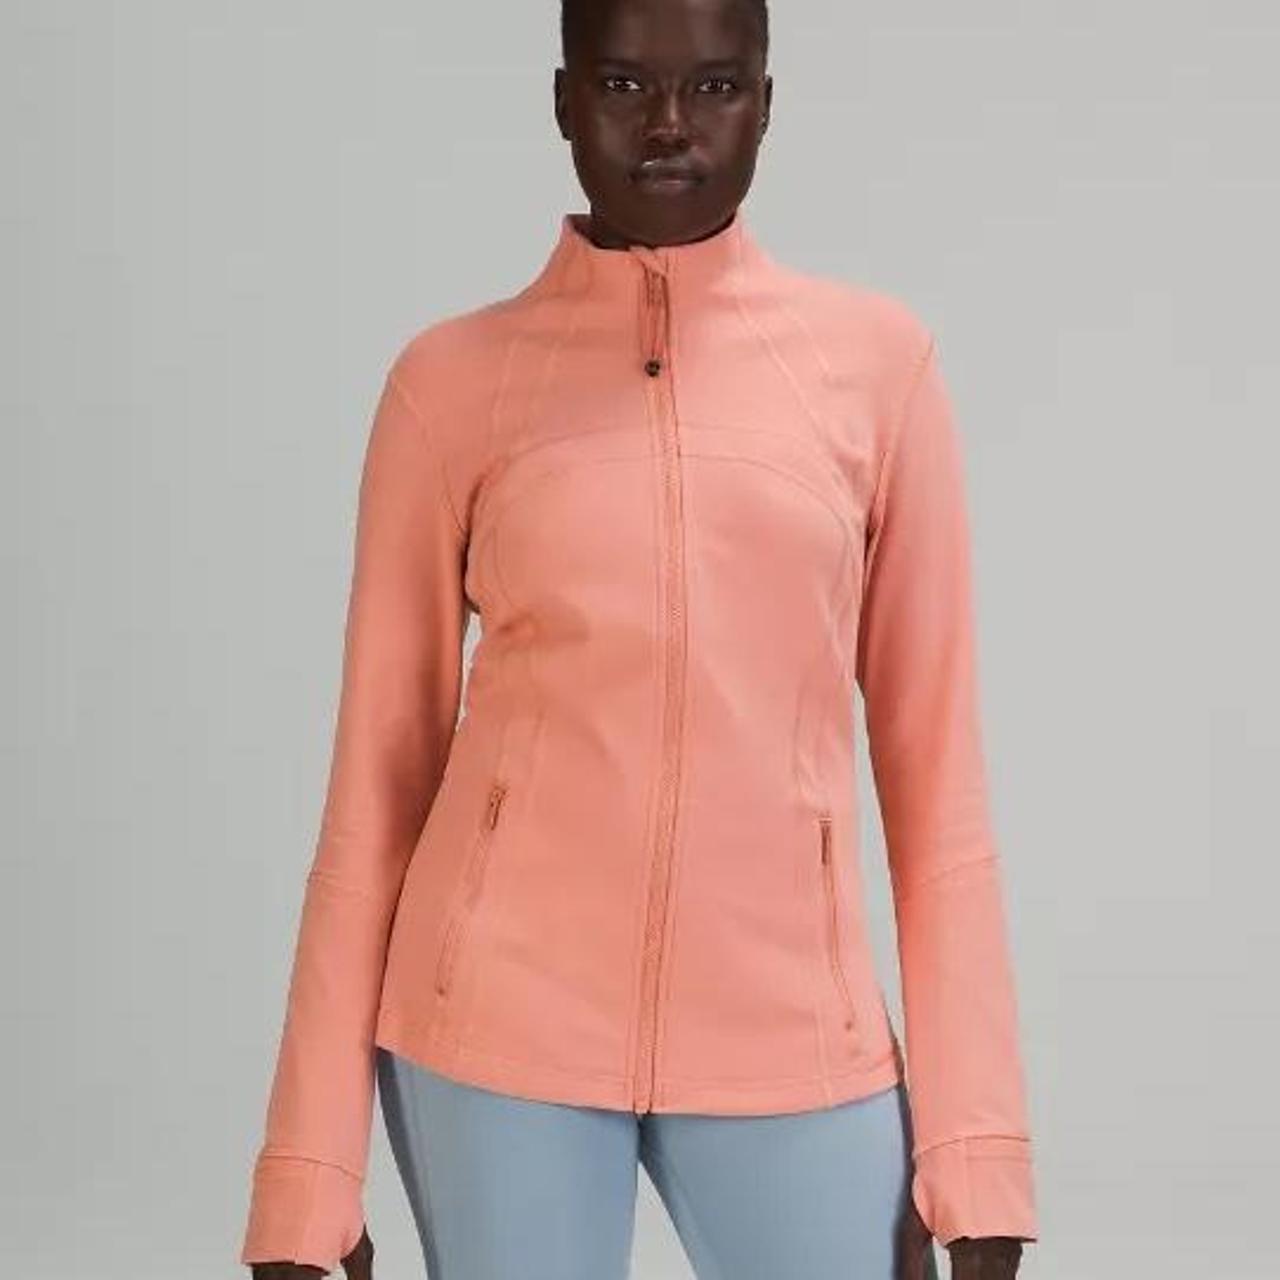 Lululemon define jacket Size 8 - Depop